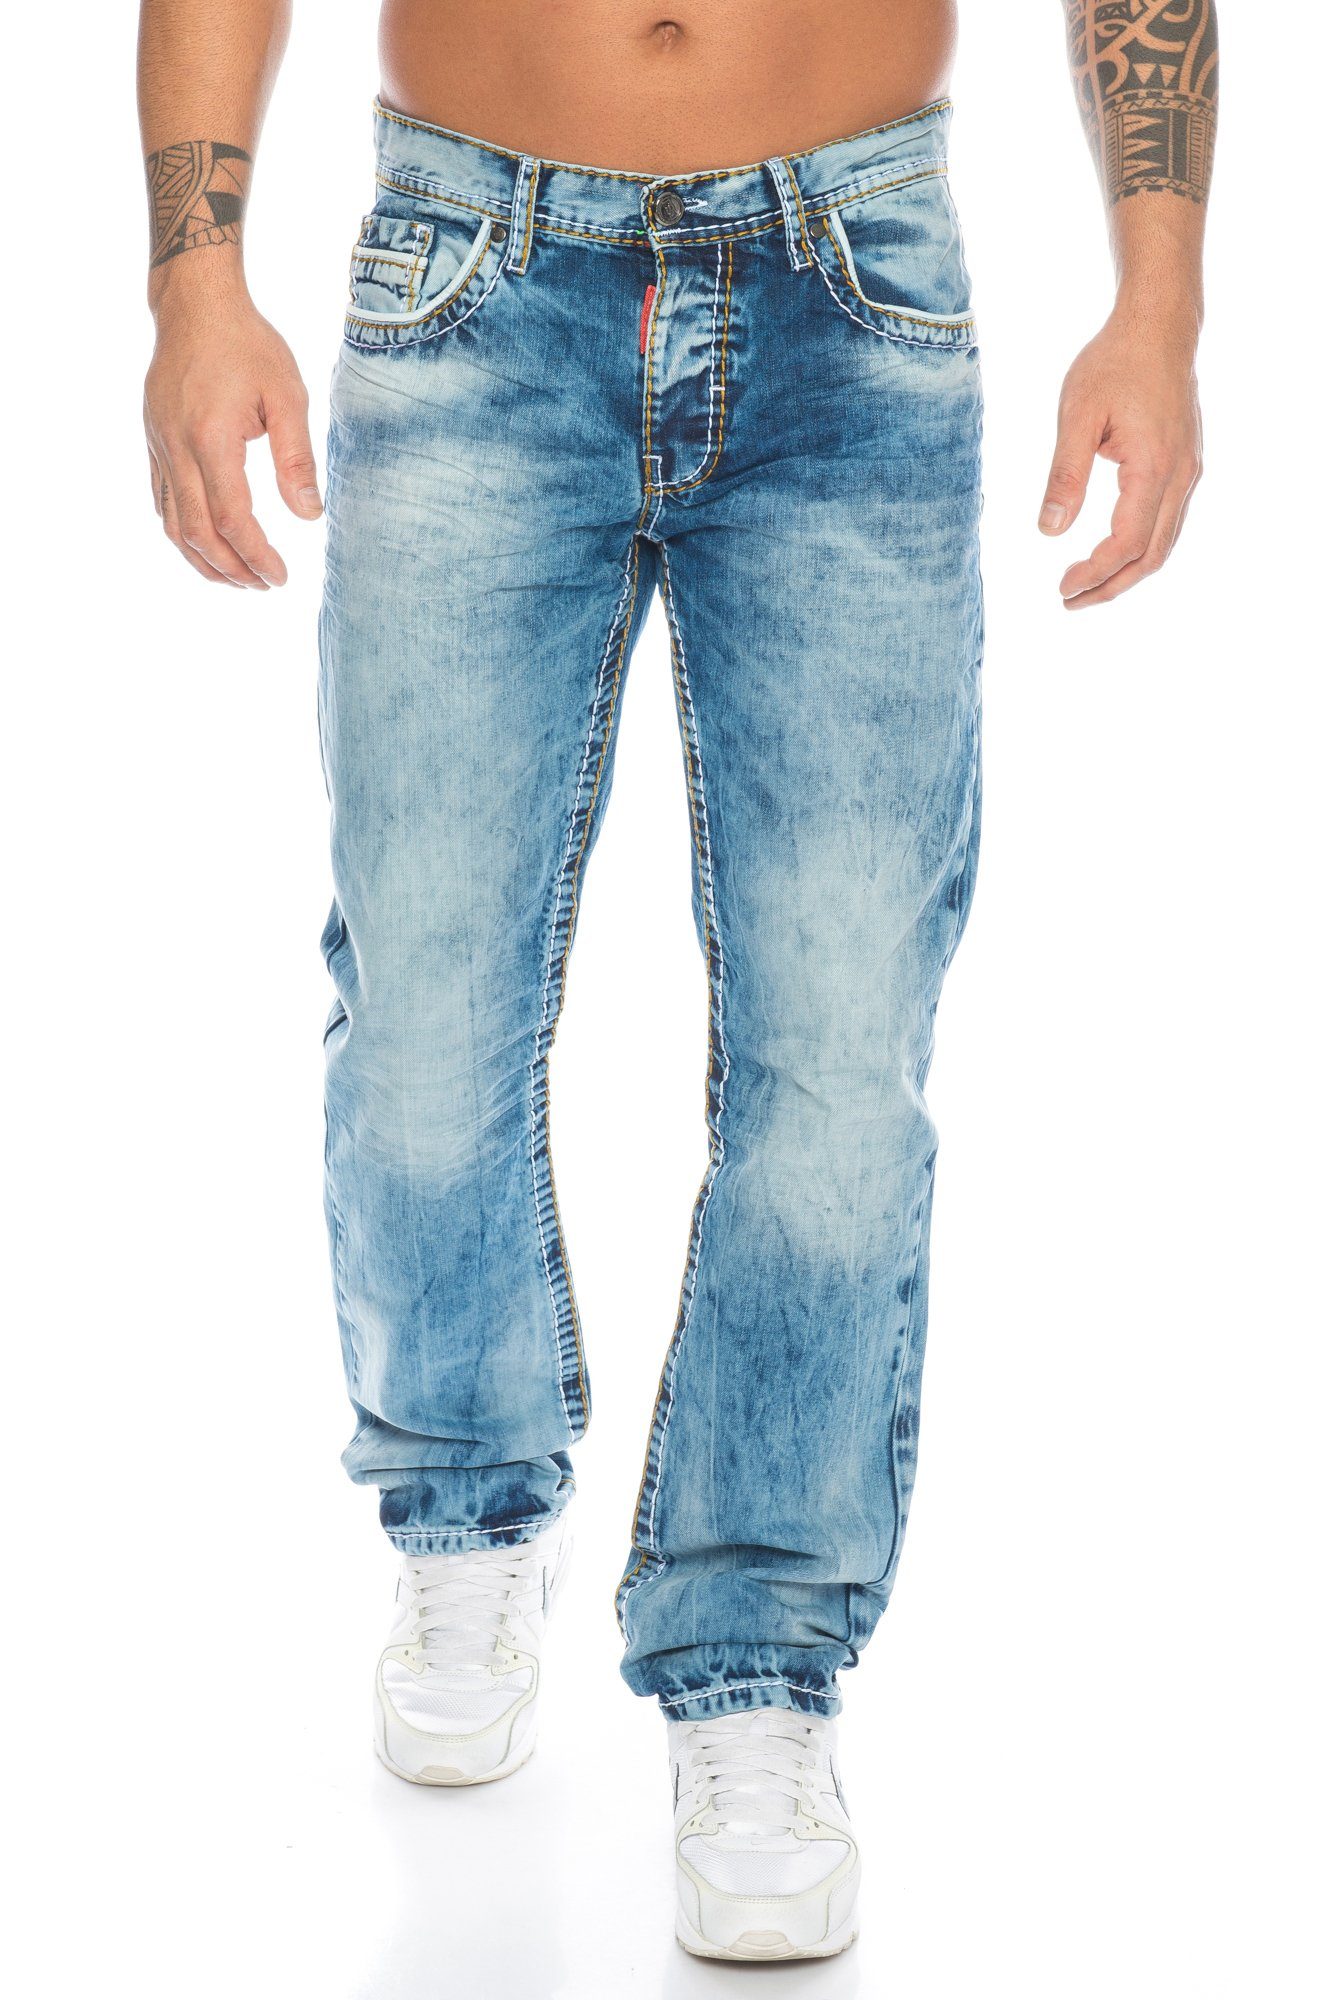 Labelpatch mit im und kleine Regular-fit-Jeans vorne & Akzente, Kontrastnähte Jeans Hose und Stoff dicke Herren Cipo Verschiedene Branding Baxx ausgefallenem Kontrastnahtdesign